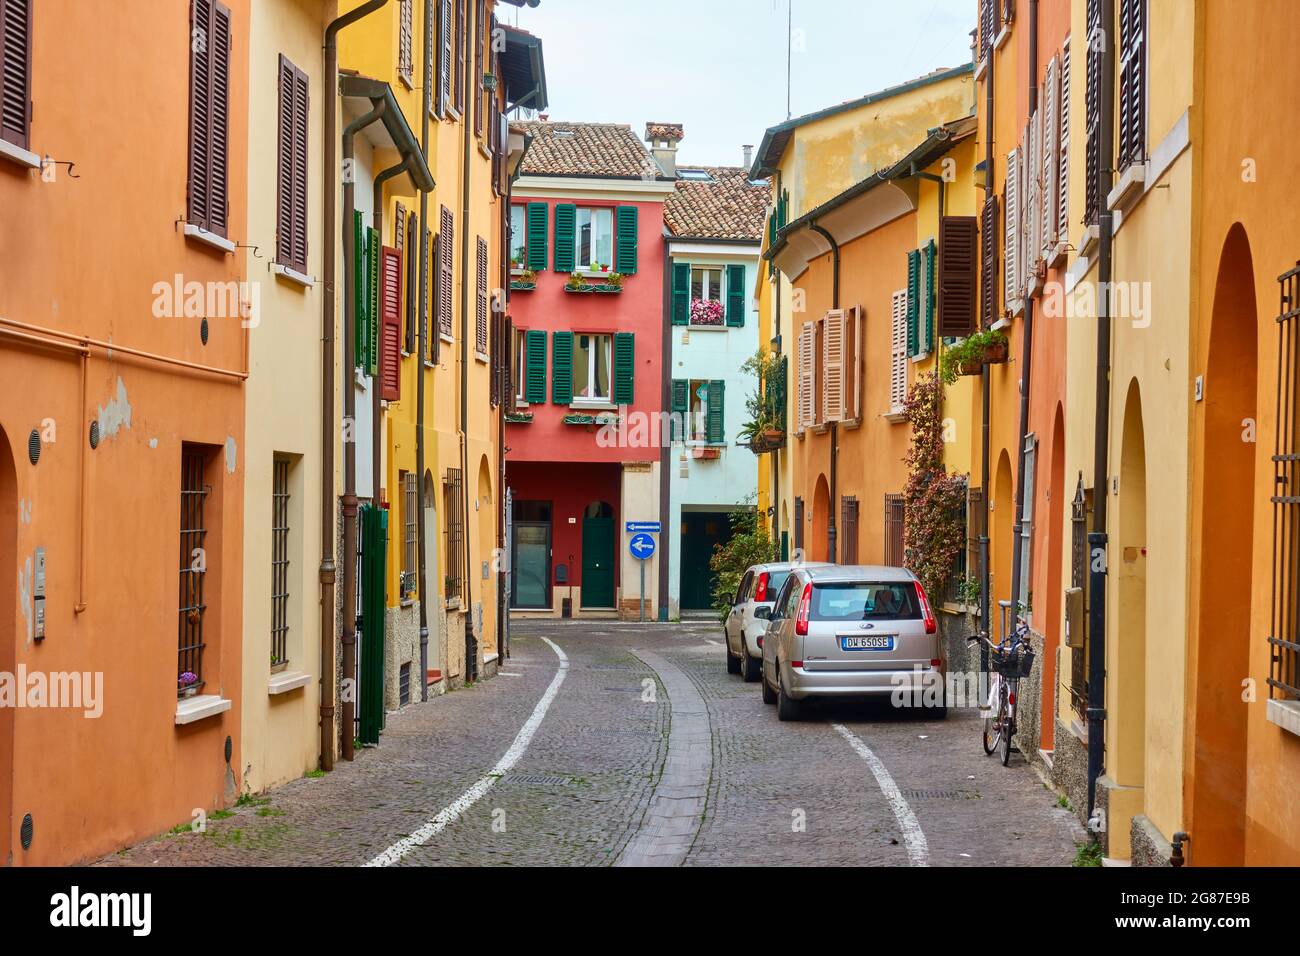 Cesena, Italia - 27 de febrero de 2020: Calle con casas antiguas y coloridas en Cesena, Emilia-Romagna. Paisaje urbano italiano Foto de stock